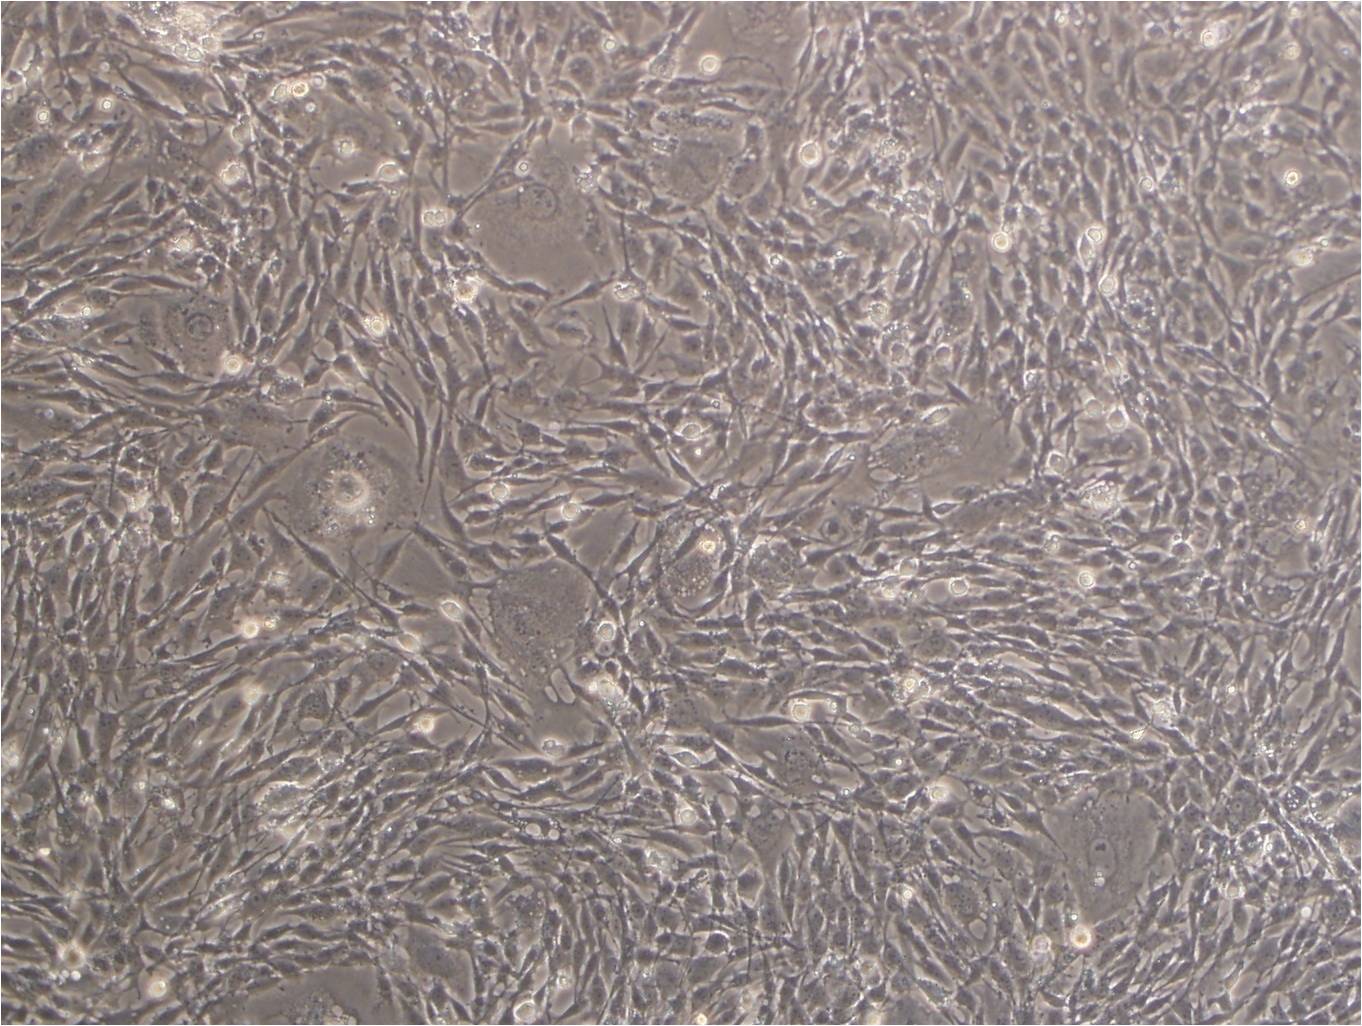 NCI-H719 epithelioid cells人小细胞肺癌细胞系